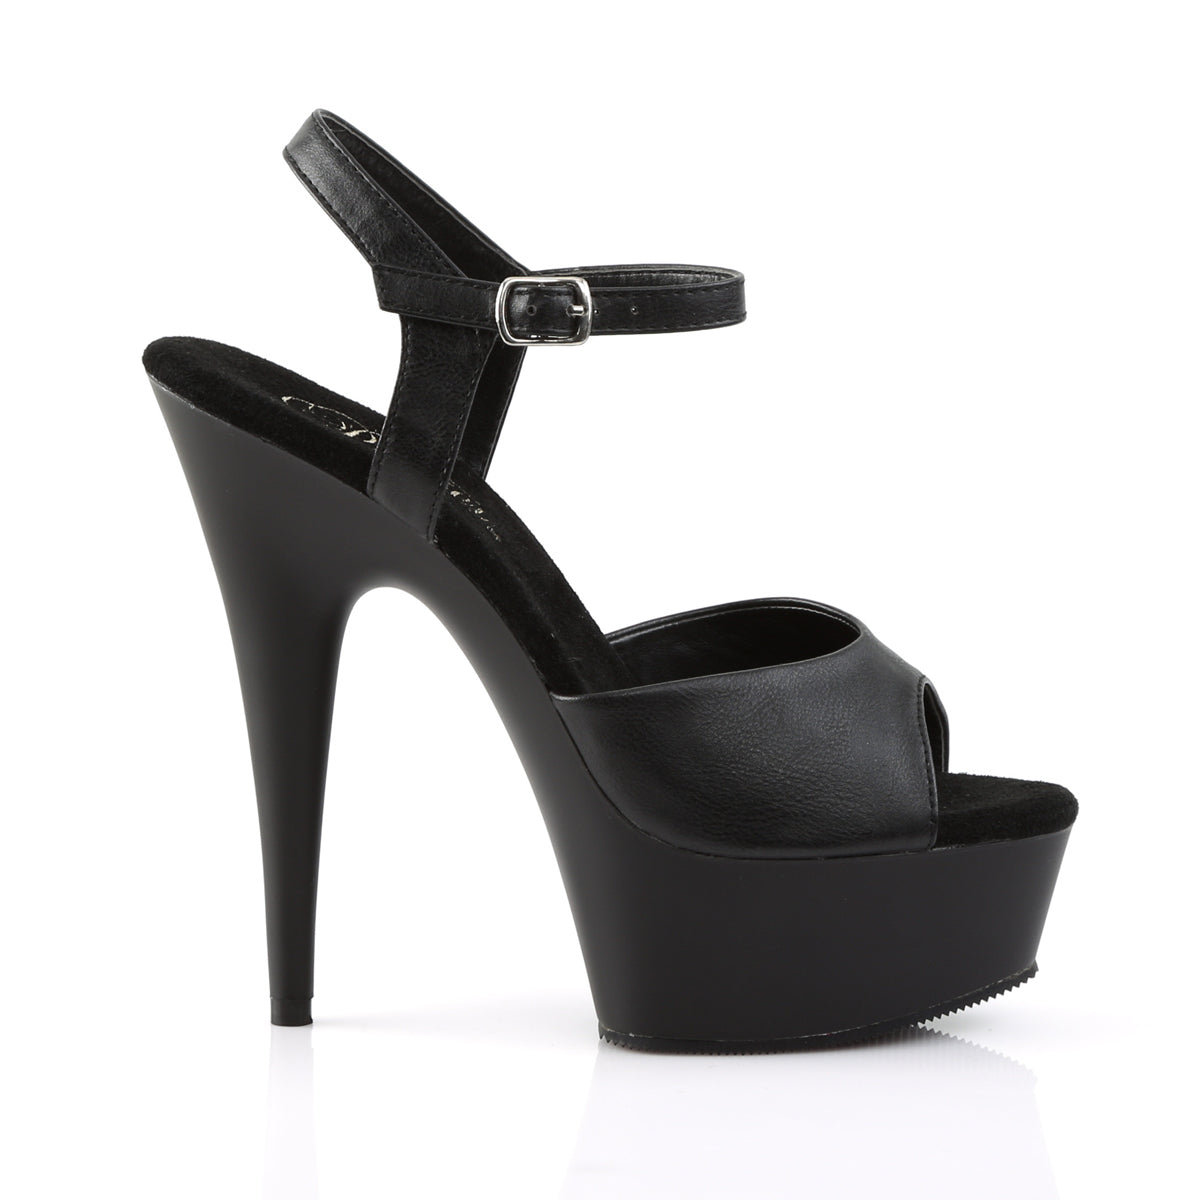 DELIGHT-609 Pleaser 6 Inch Heel Black Pole Dancing Platform-Pleaser- Sexy Shoes Fetish Heels